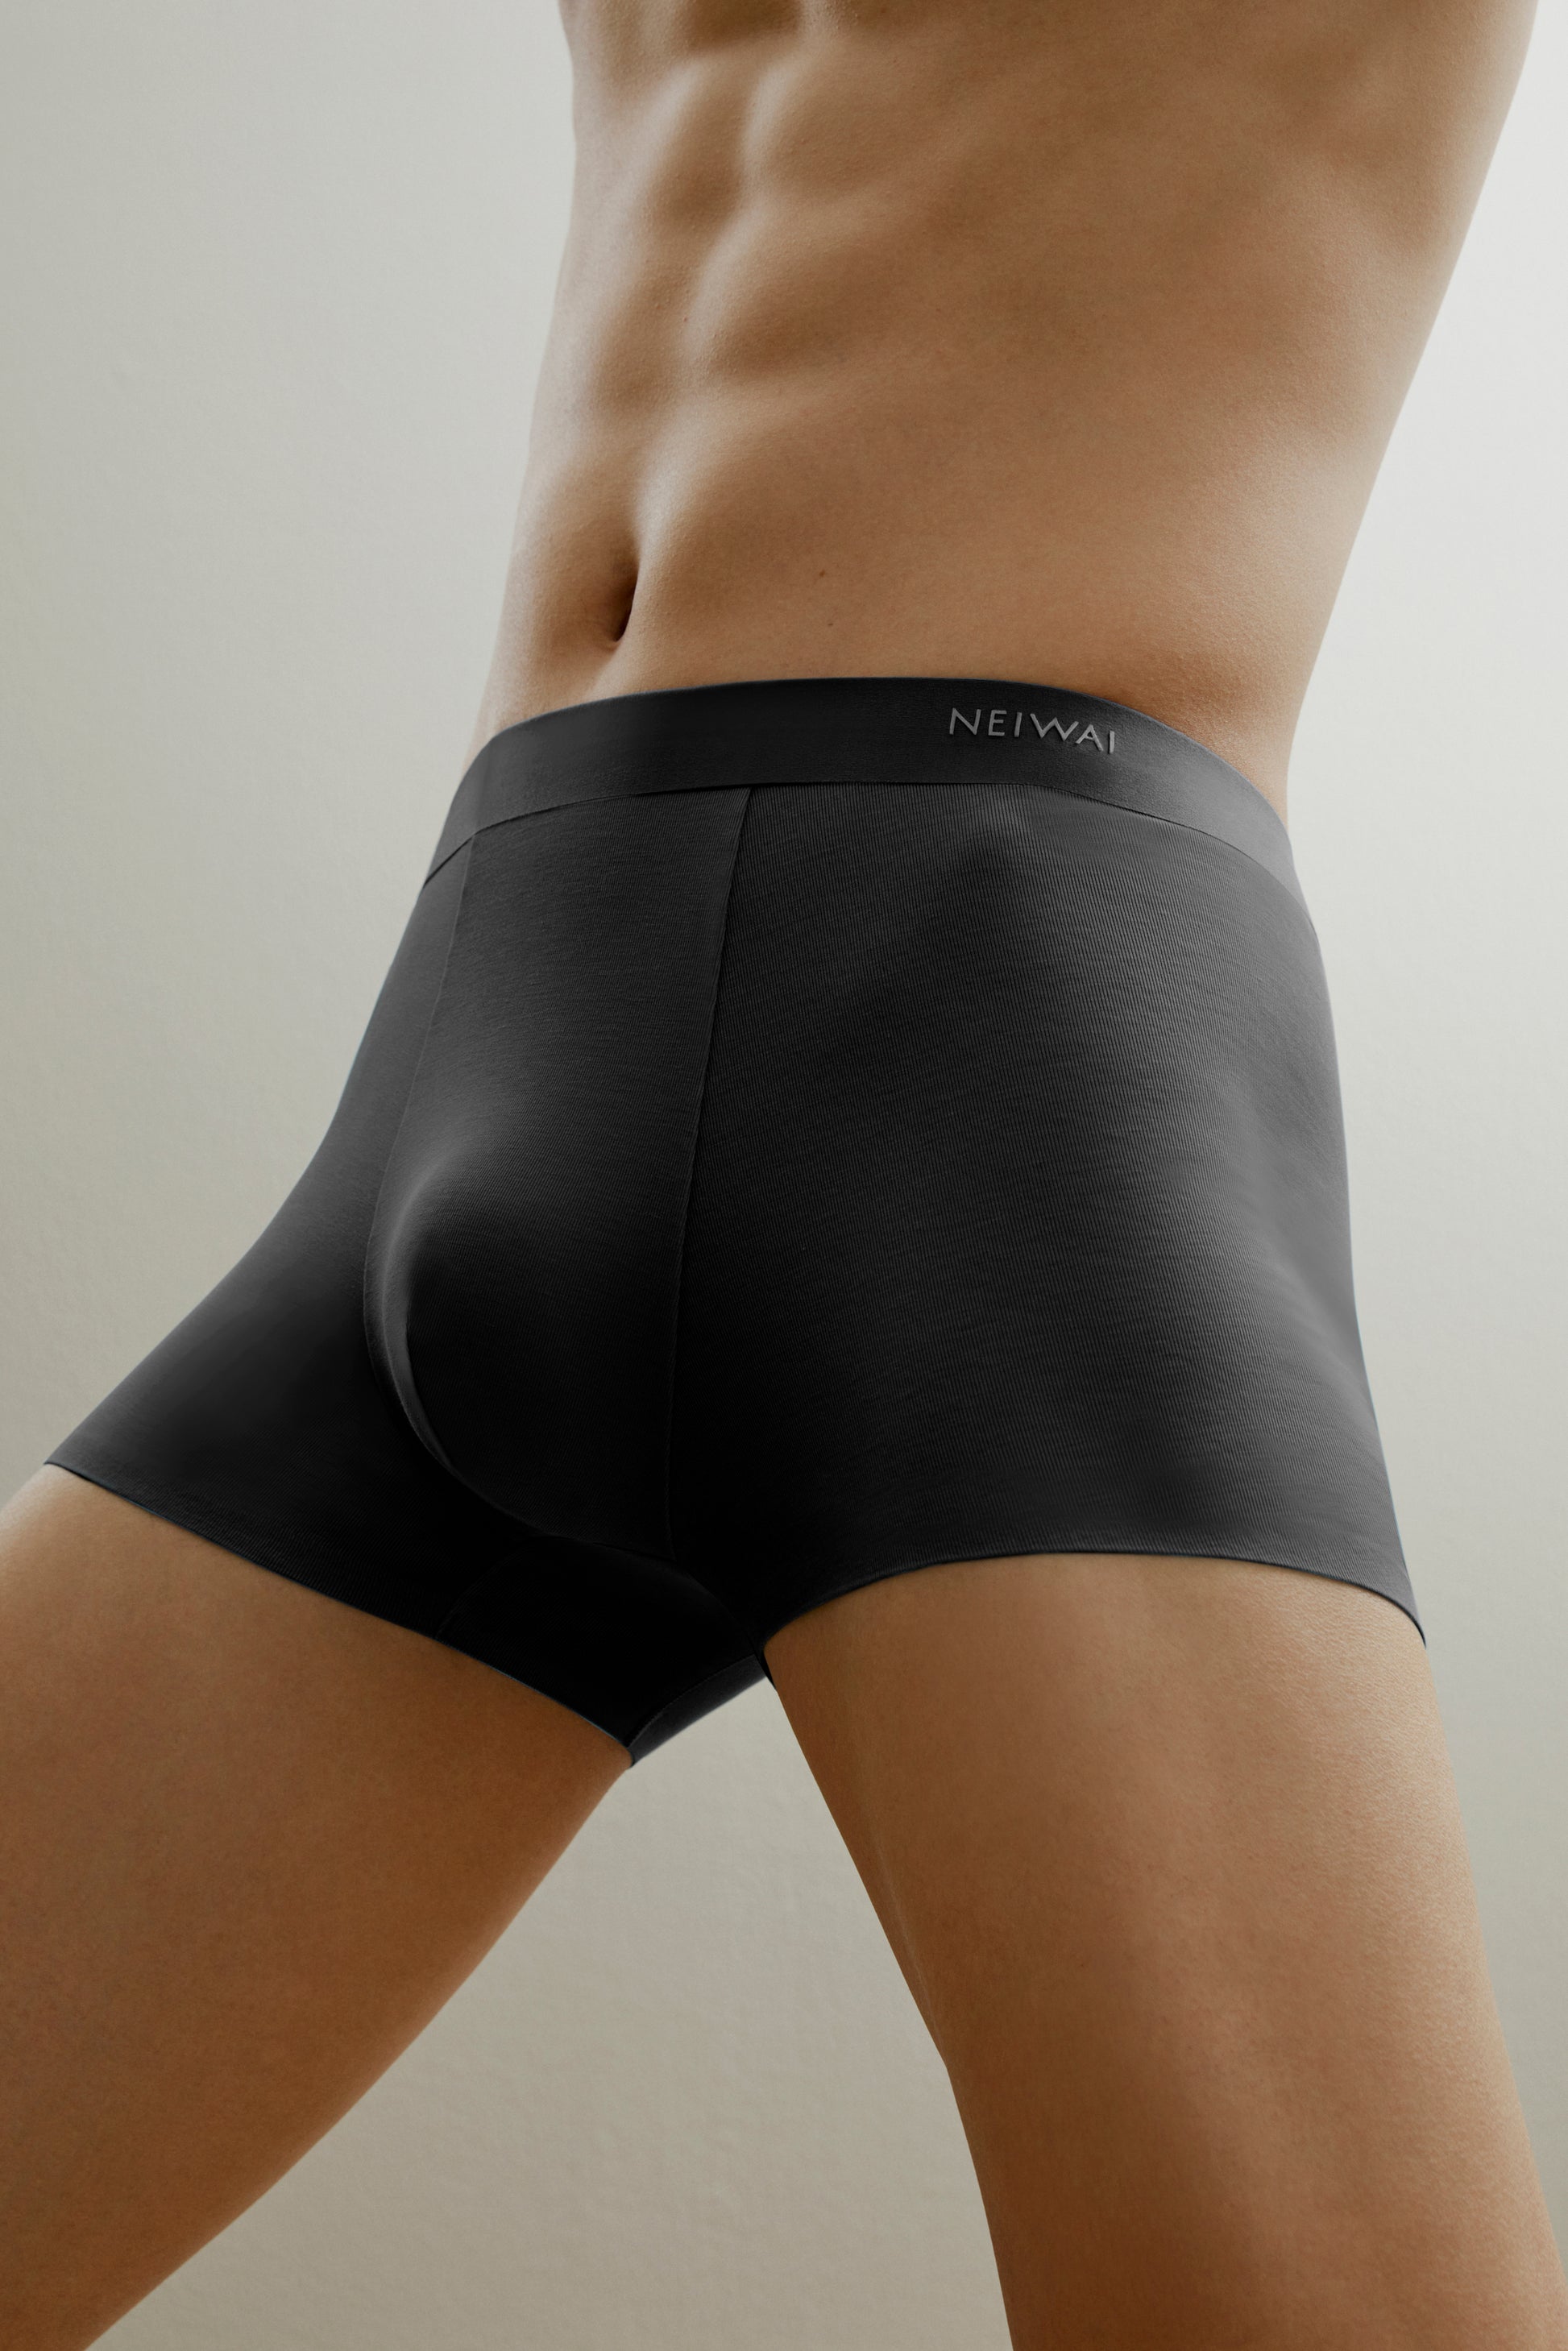 Mens Boxer Shorts Antibacterial Ice Silk Underwear - Silk Underwear Men -  Style Review